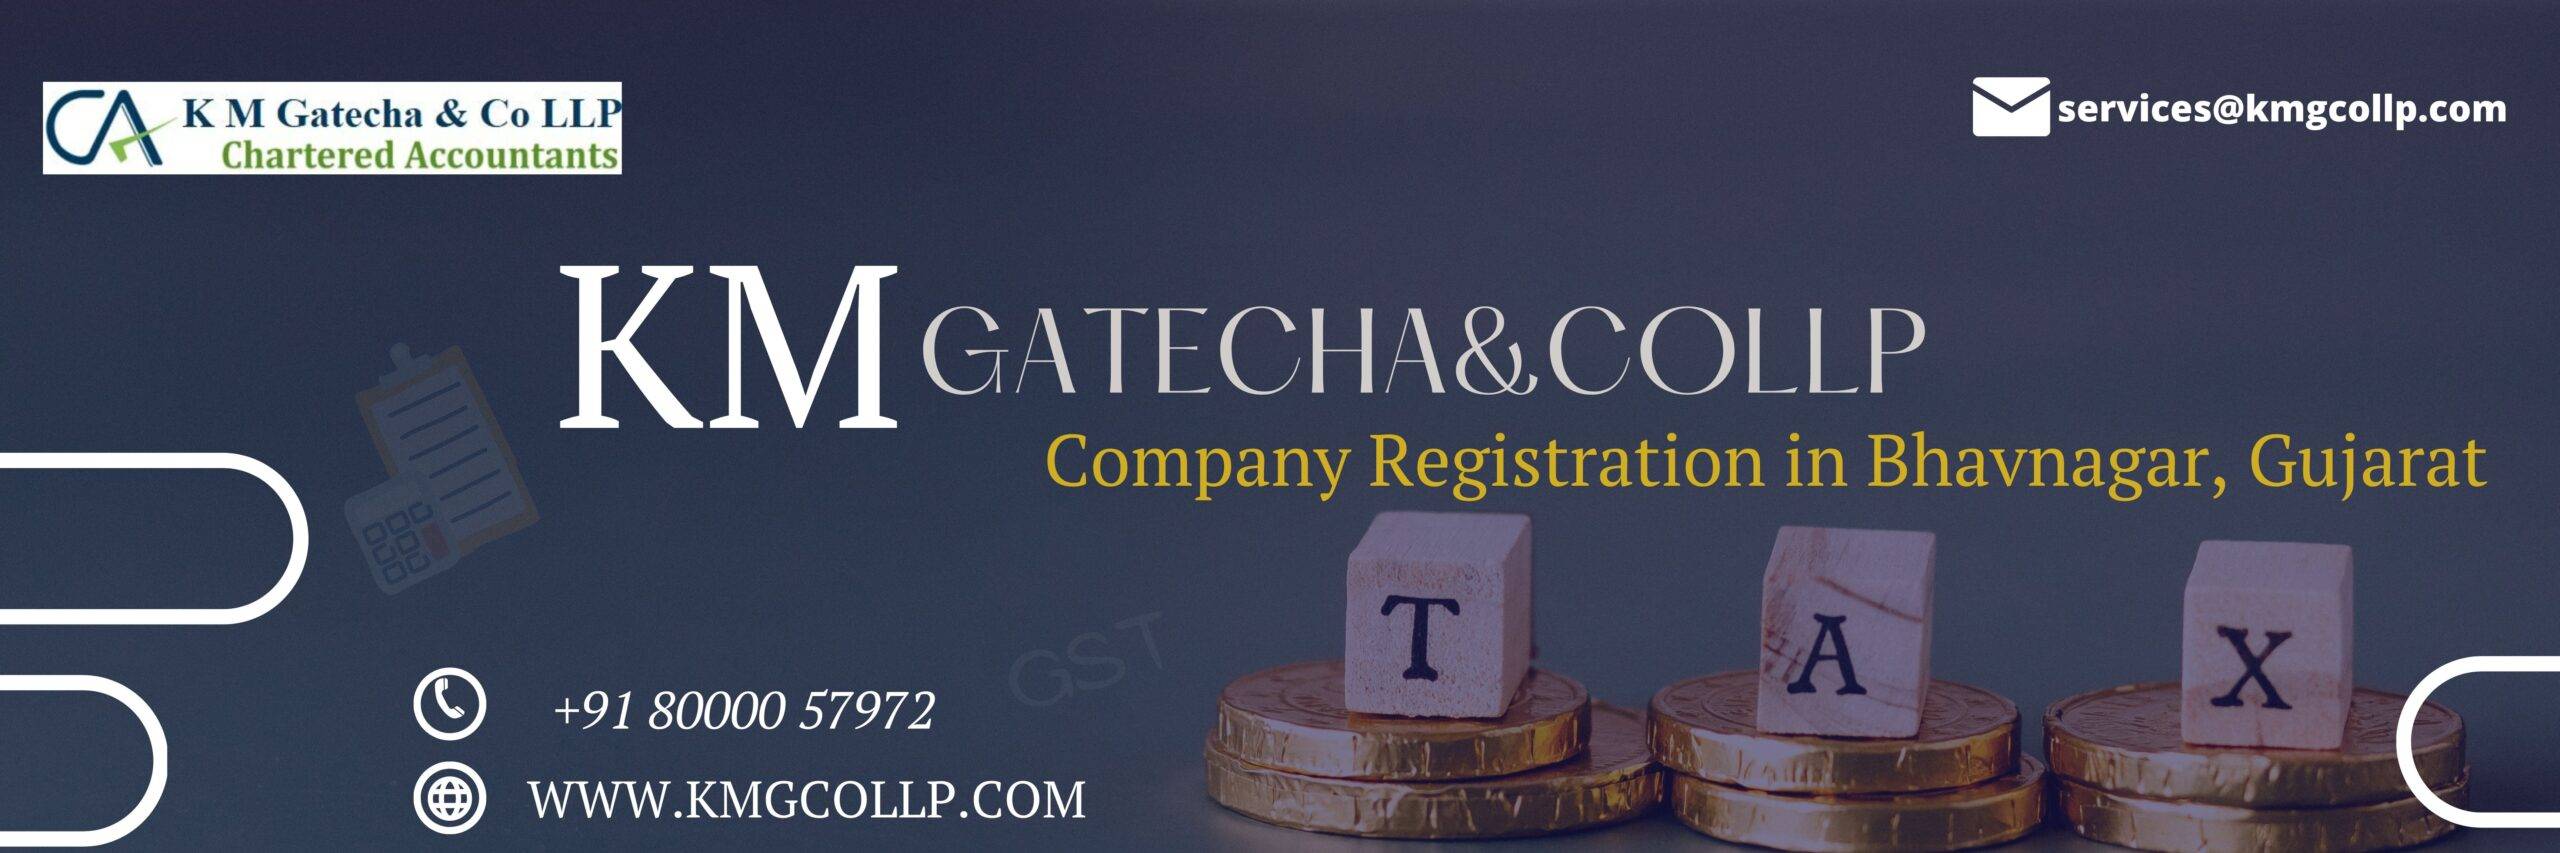 Company registration in Bhavnagar